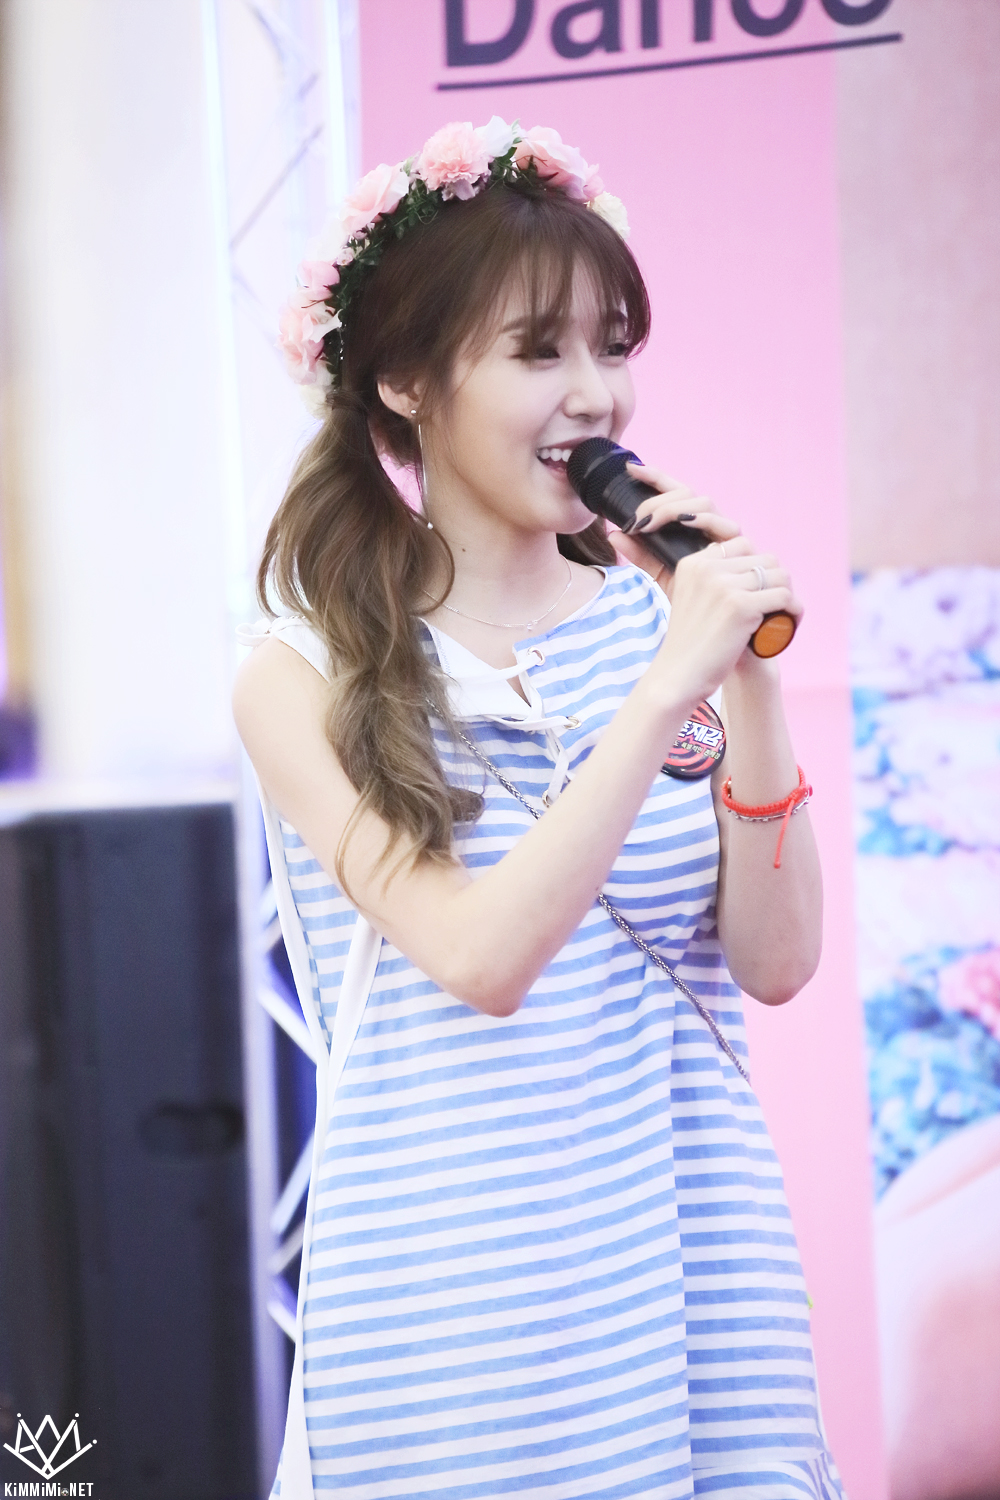 [PIC][06-06-2016]Tiffany tham dự buổi Fansign cho "I Just Wanna Dance" tại Busan vào chiều nay - Page 5 23311239575818D22B8F4C